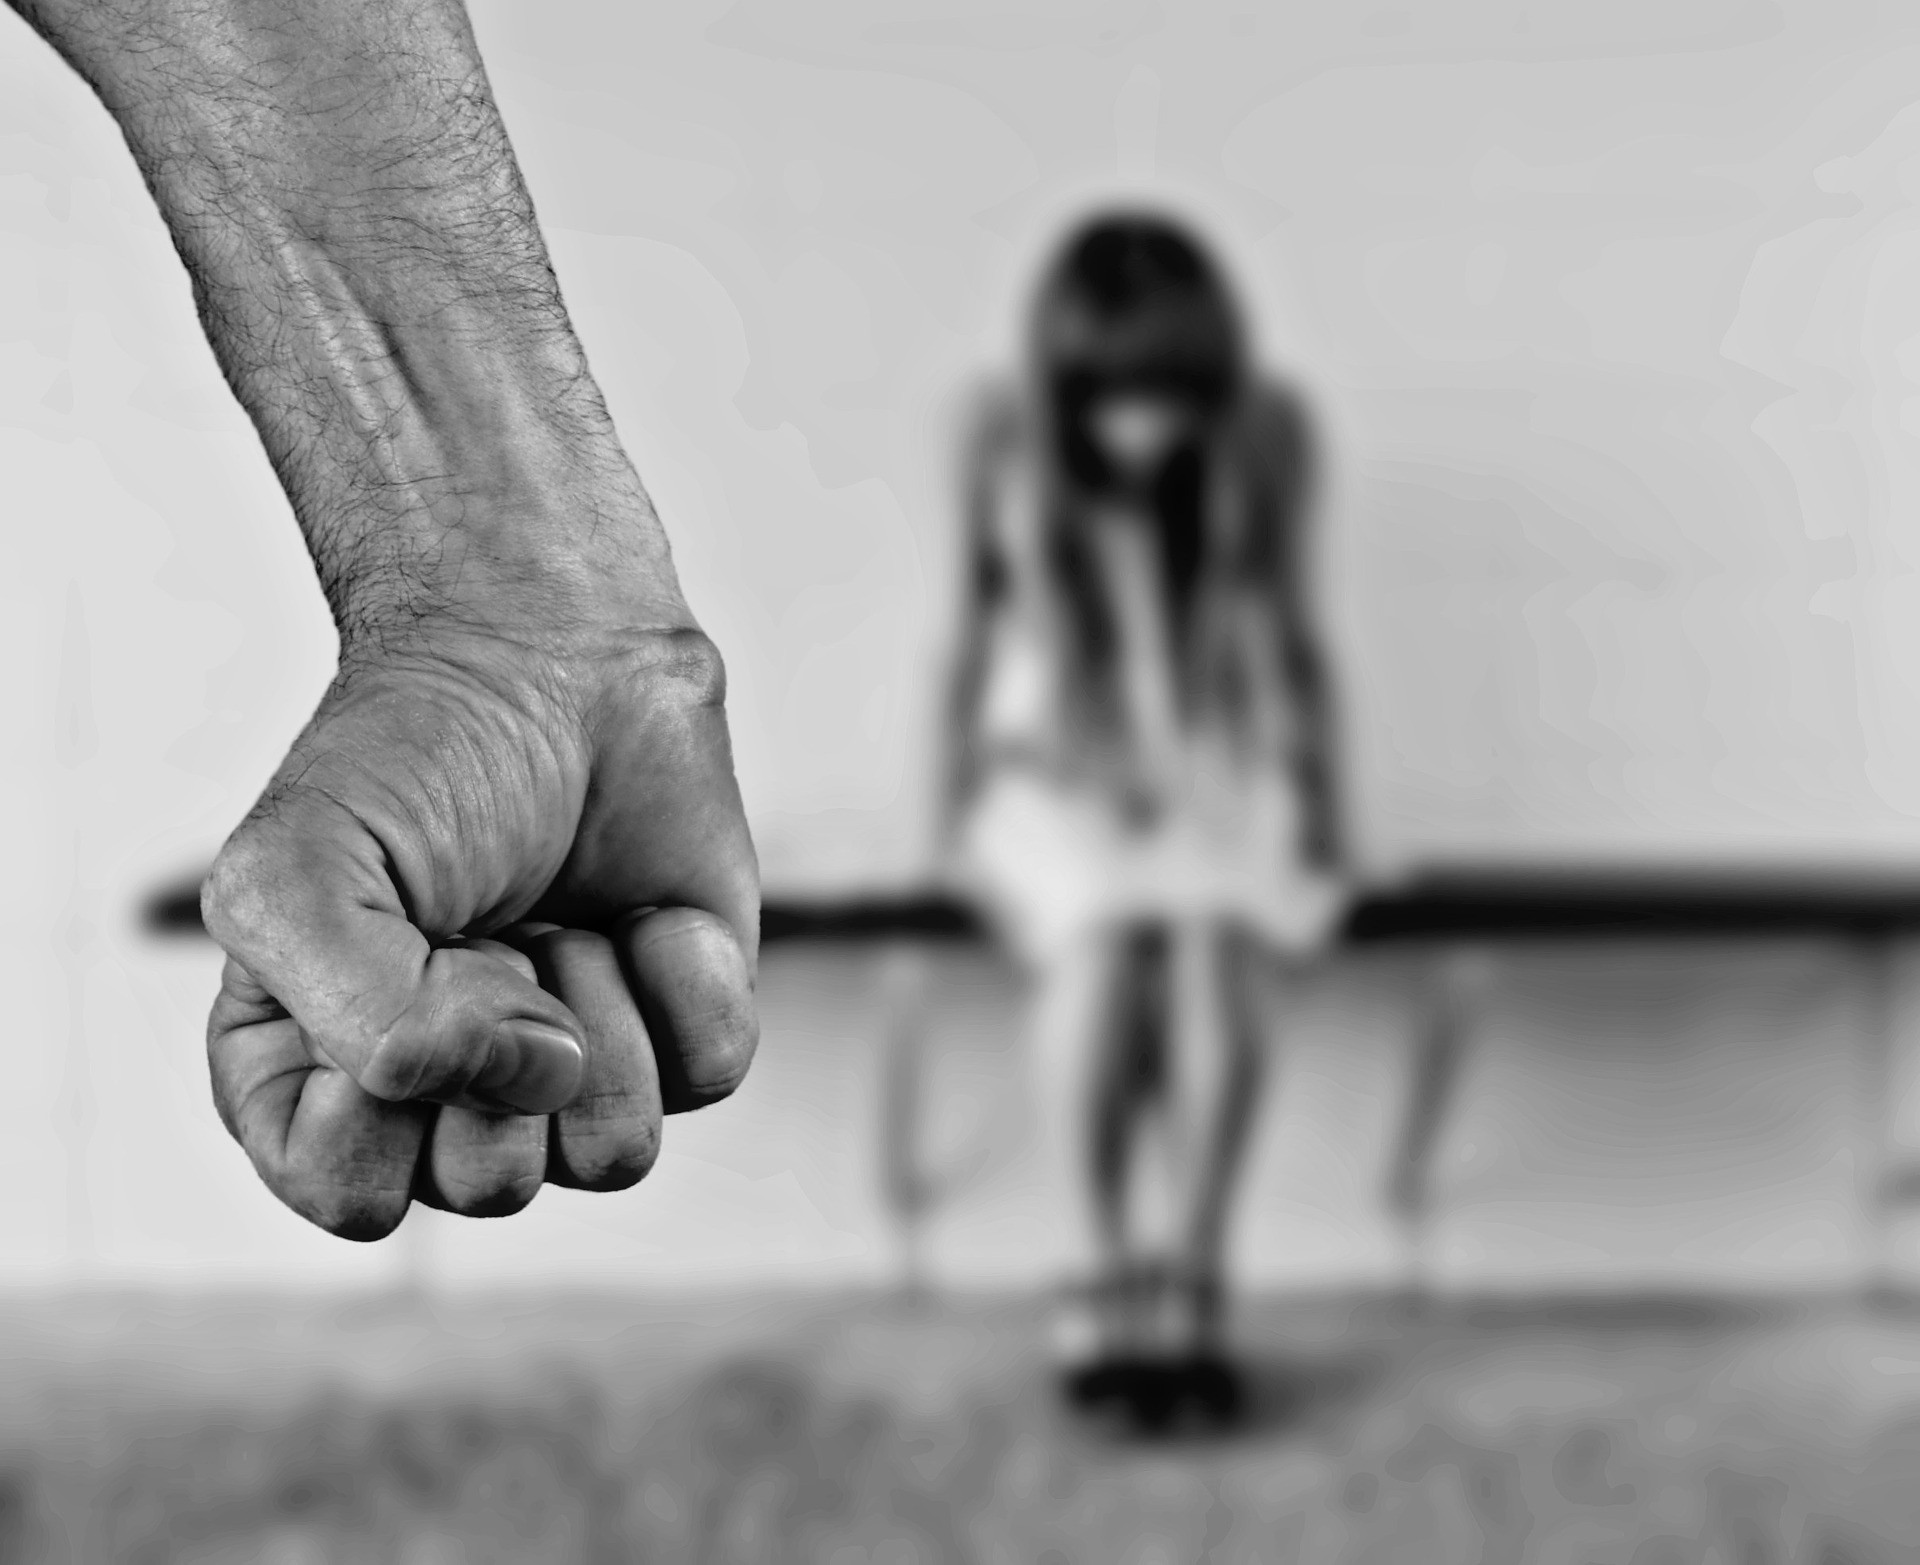 67% dos meninos e meninas com idades entre 10 e 12 anos não se sentem suficientemente protegidos contra violência (Foto: Pixabay License)